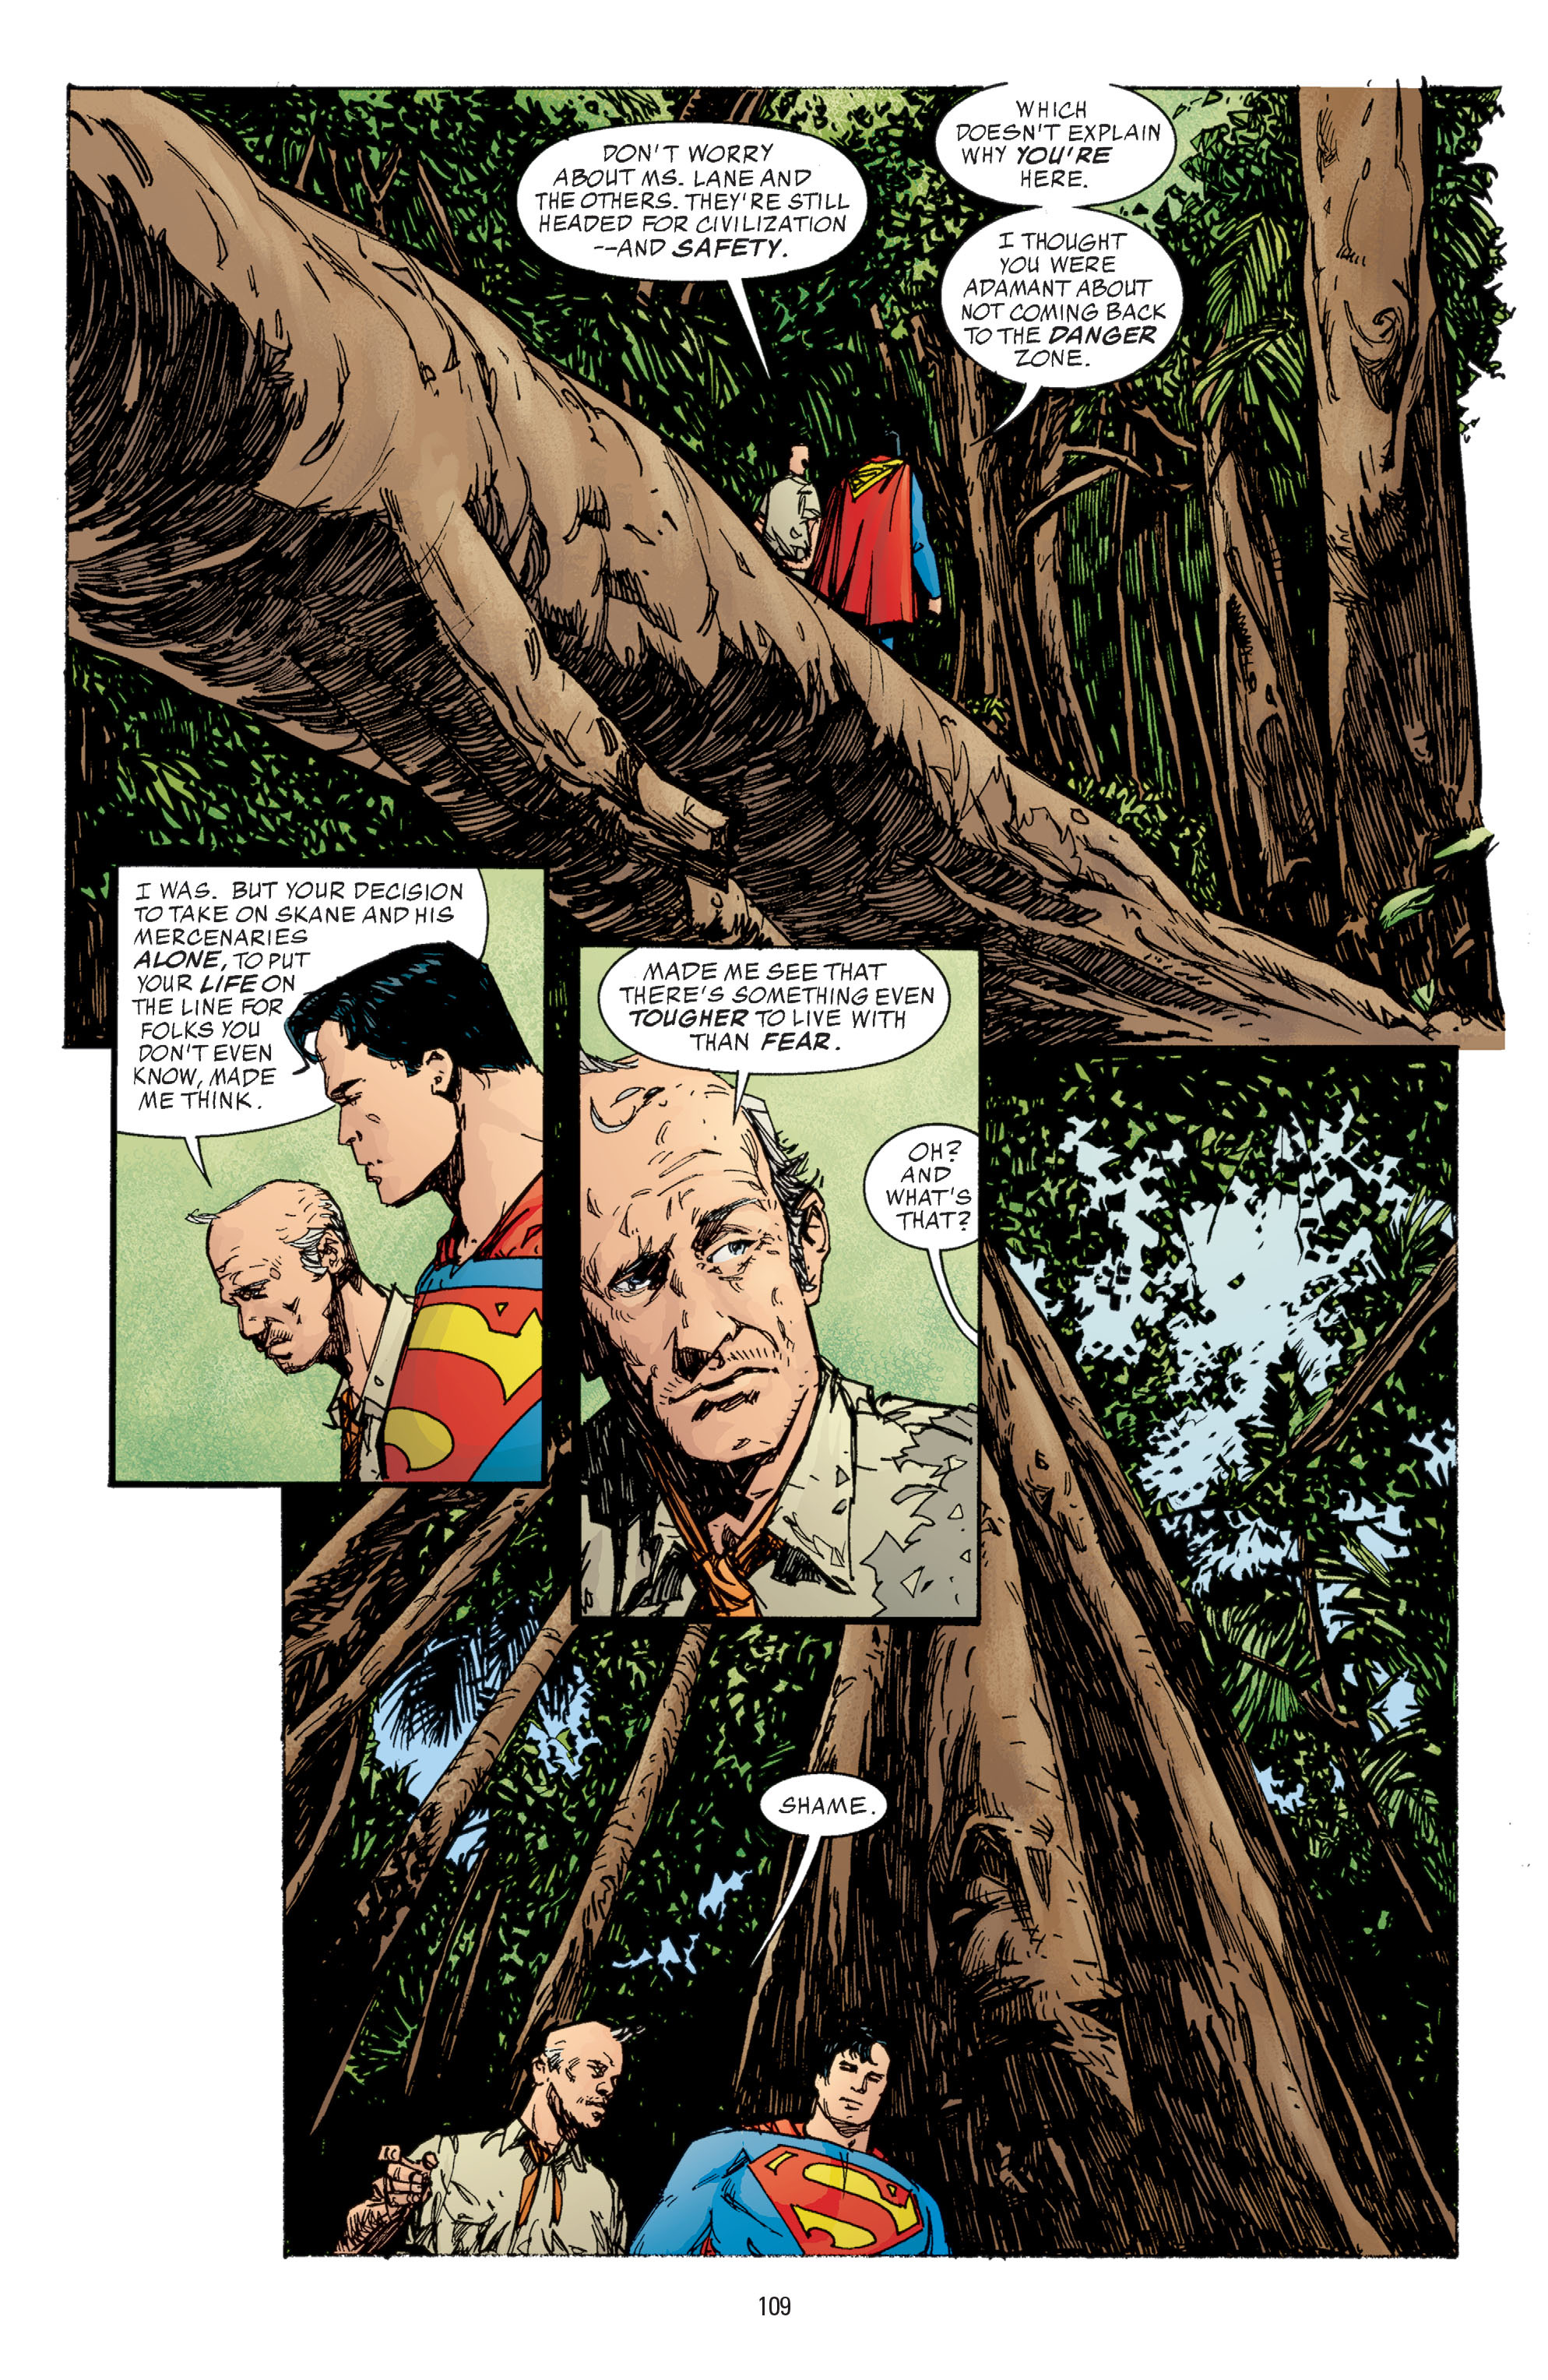 DC Comics/Dark Horse Comics: Justice League Full #1 - English 107